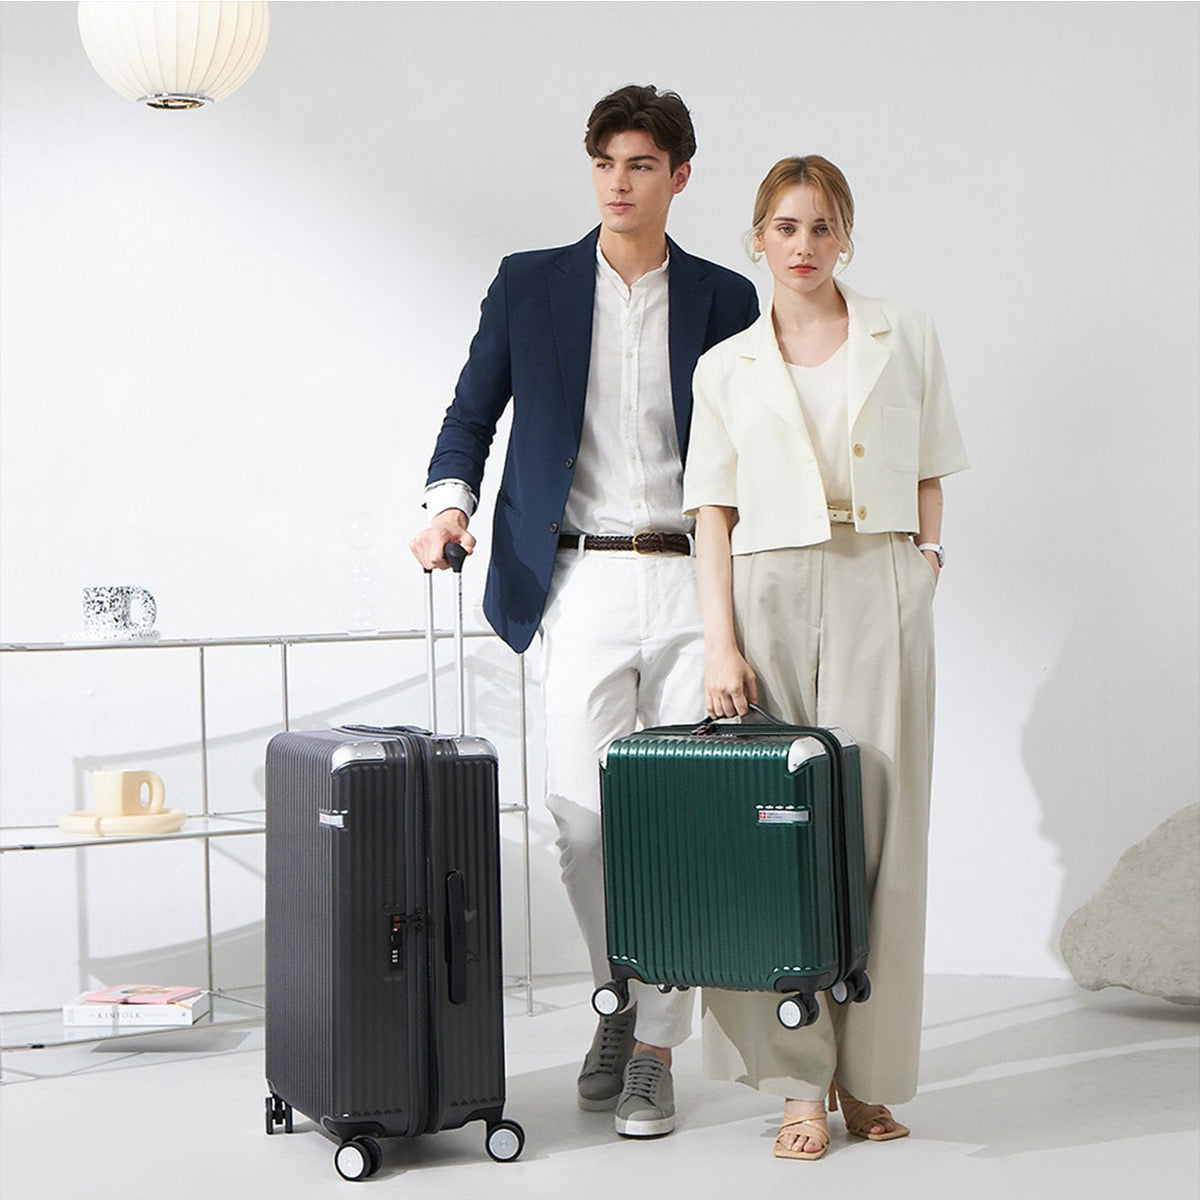 【予約:2月23日発売】スーツケース Lサイズ 一週間以上 71cm SOGLIO(ソーリオ) バニラホワイト 【内装アップグレード版】